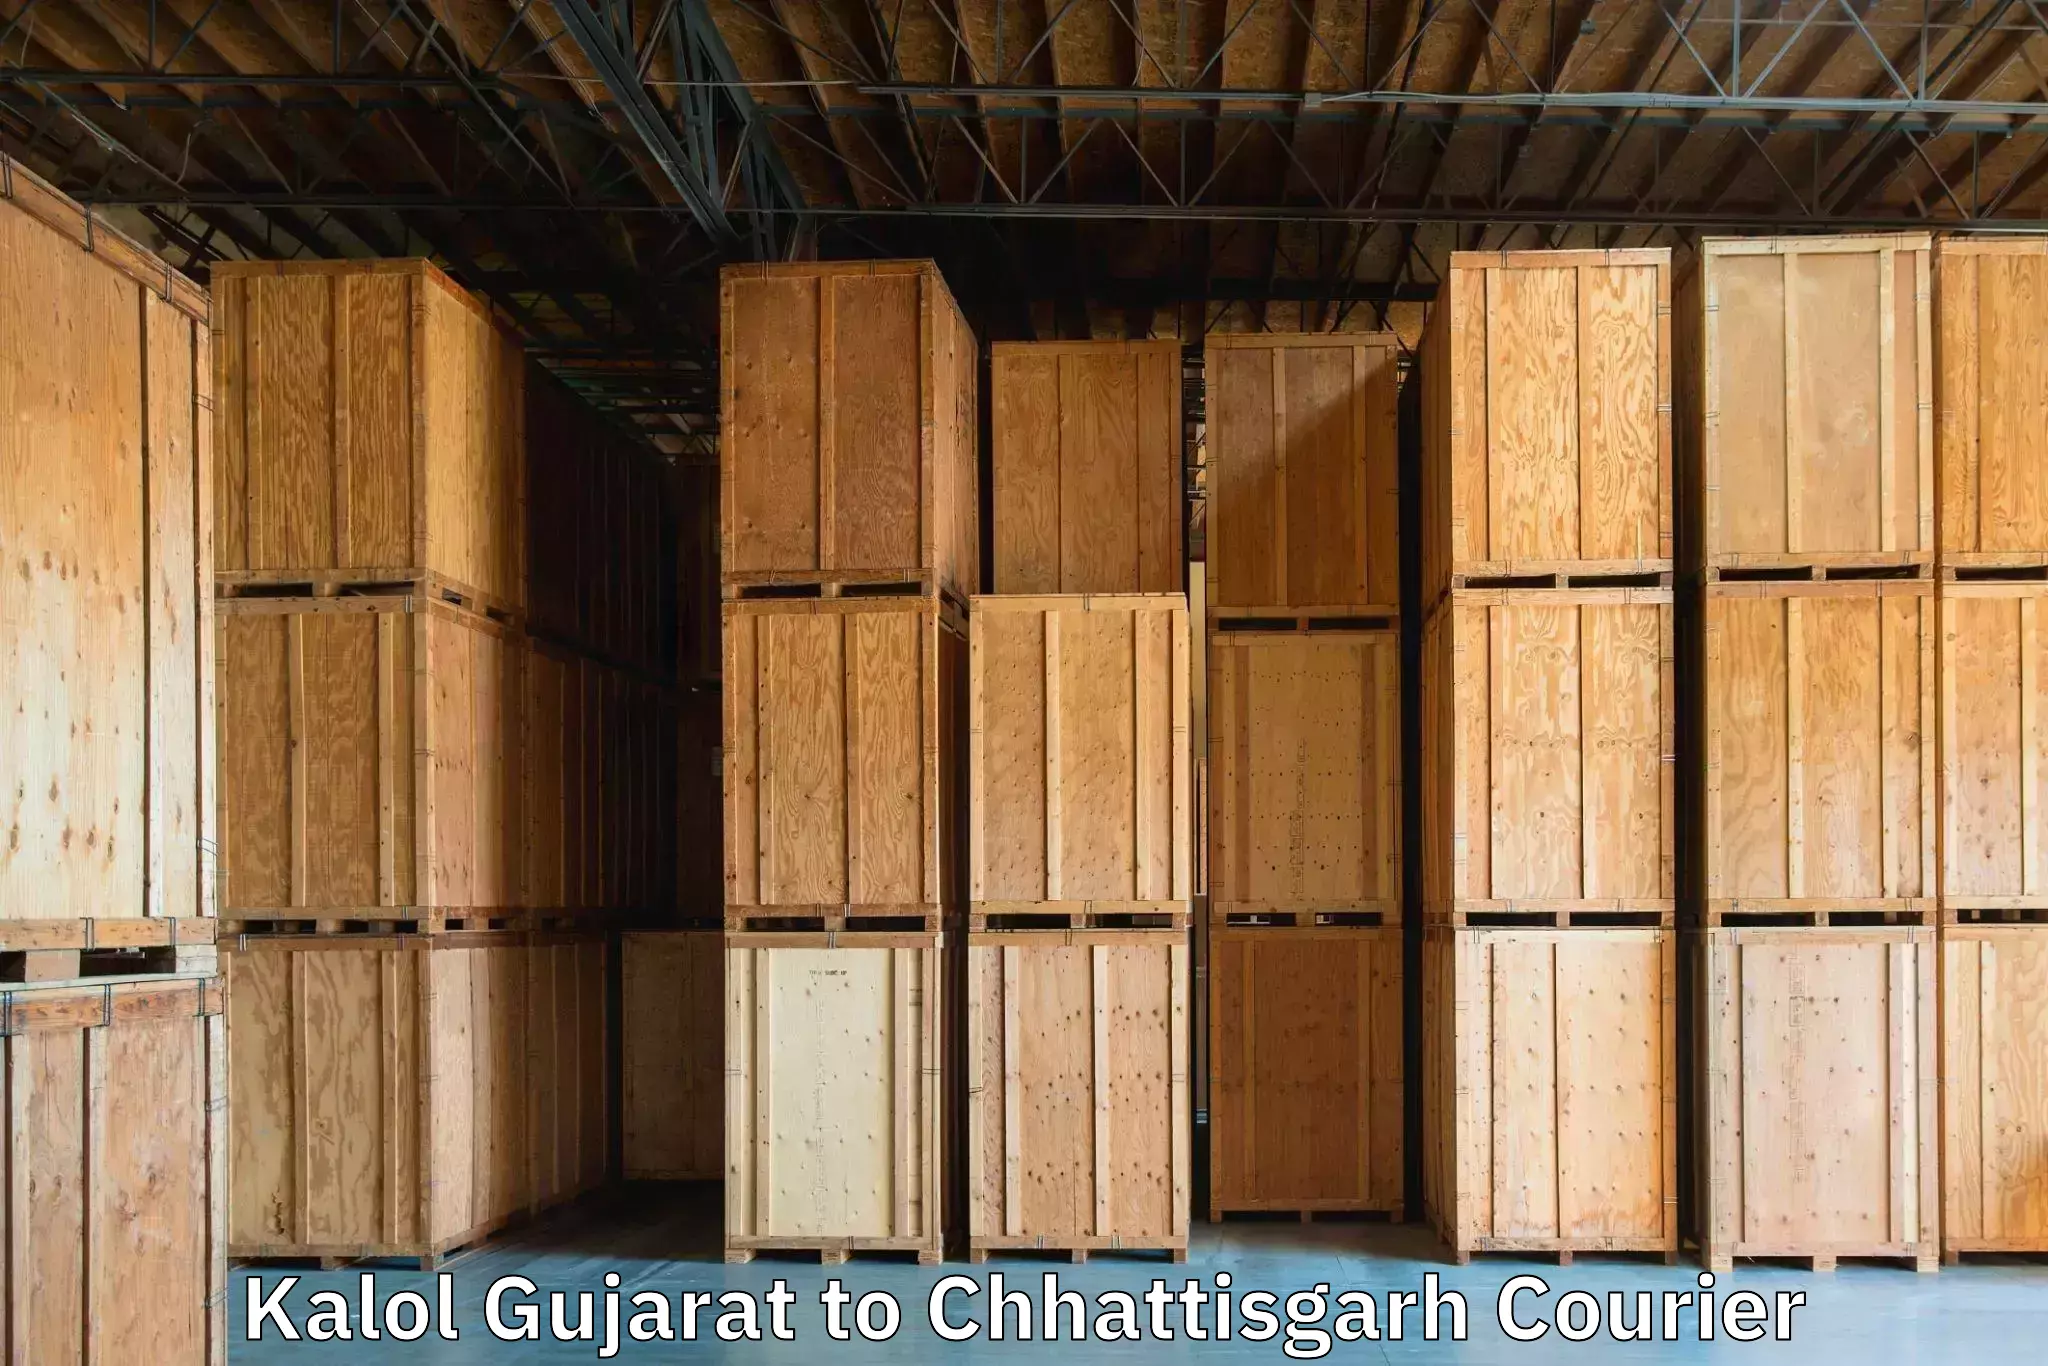 Luggage transport consulting Kalol Gujarat to Mahasamund